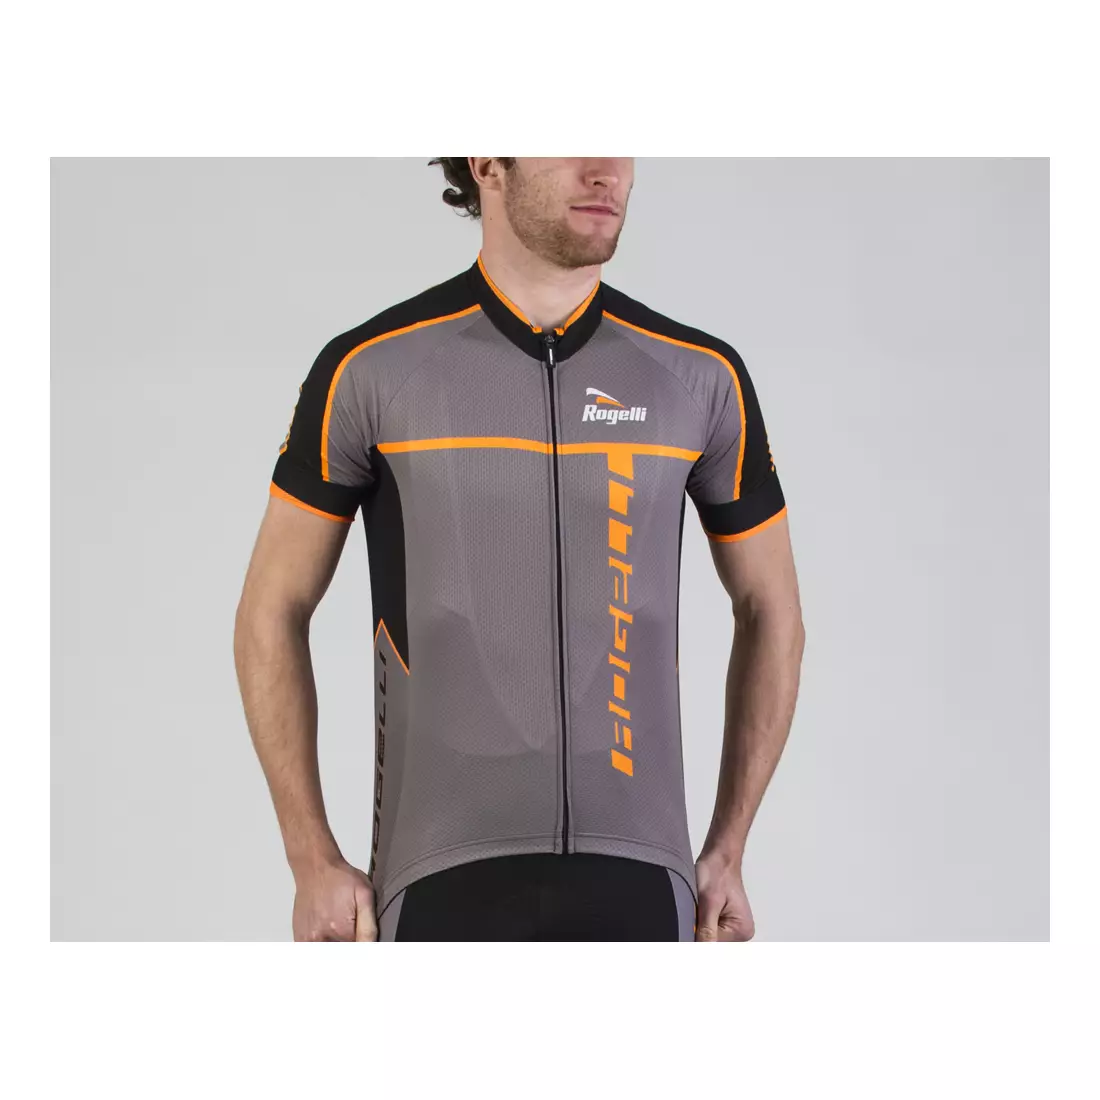 ROGELLI UMBRIA 2.0 pánský šedý a oranžový cyklistický dres